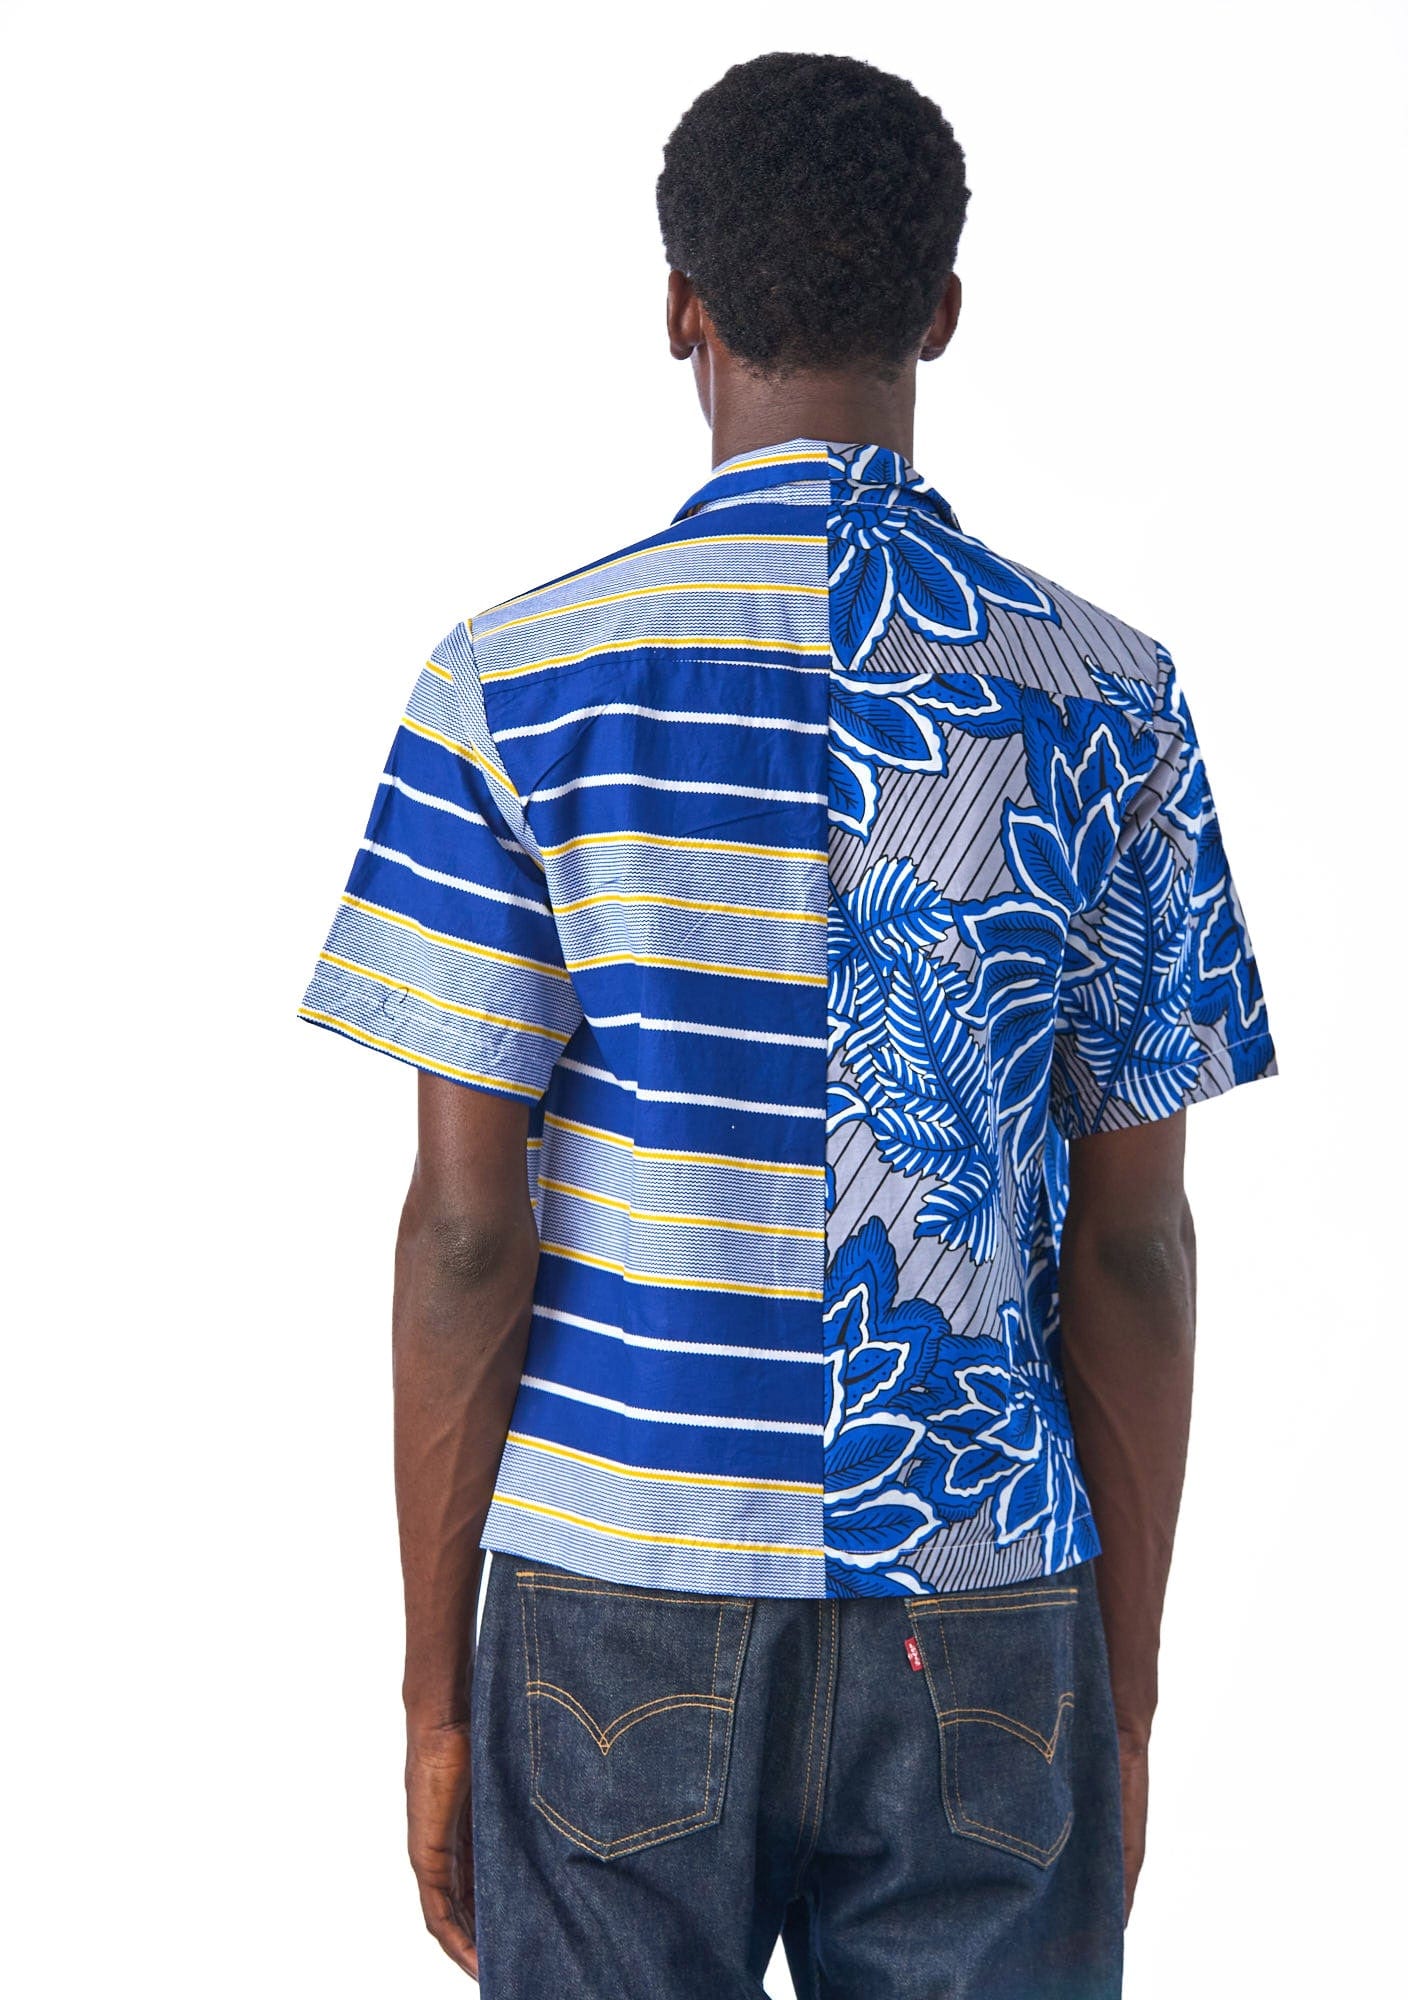 YEVU VIP Men - Shirt Mixed Print Shirt - Horizon / Holiday